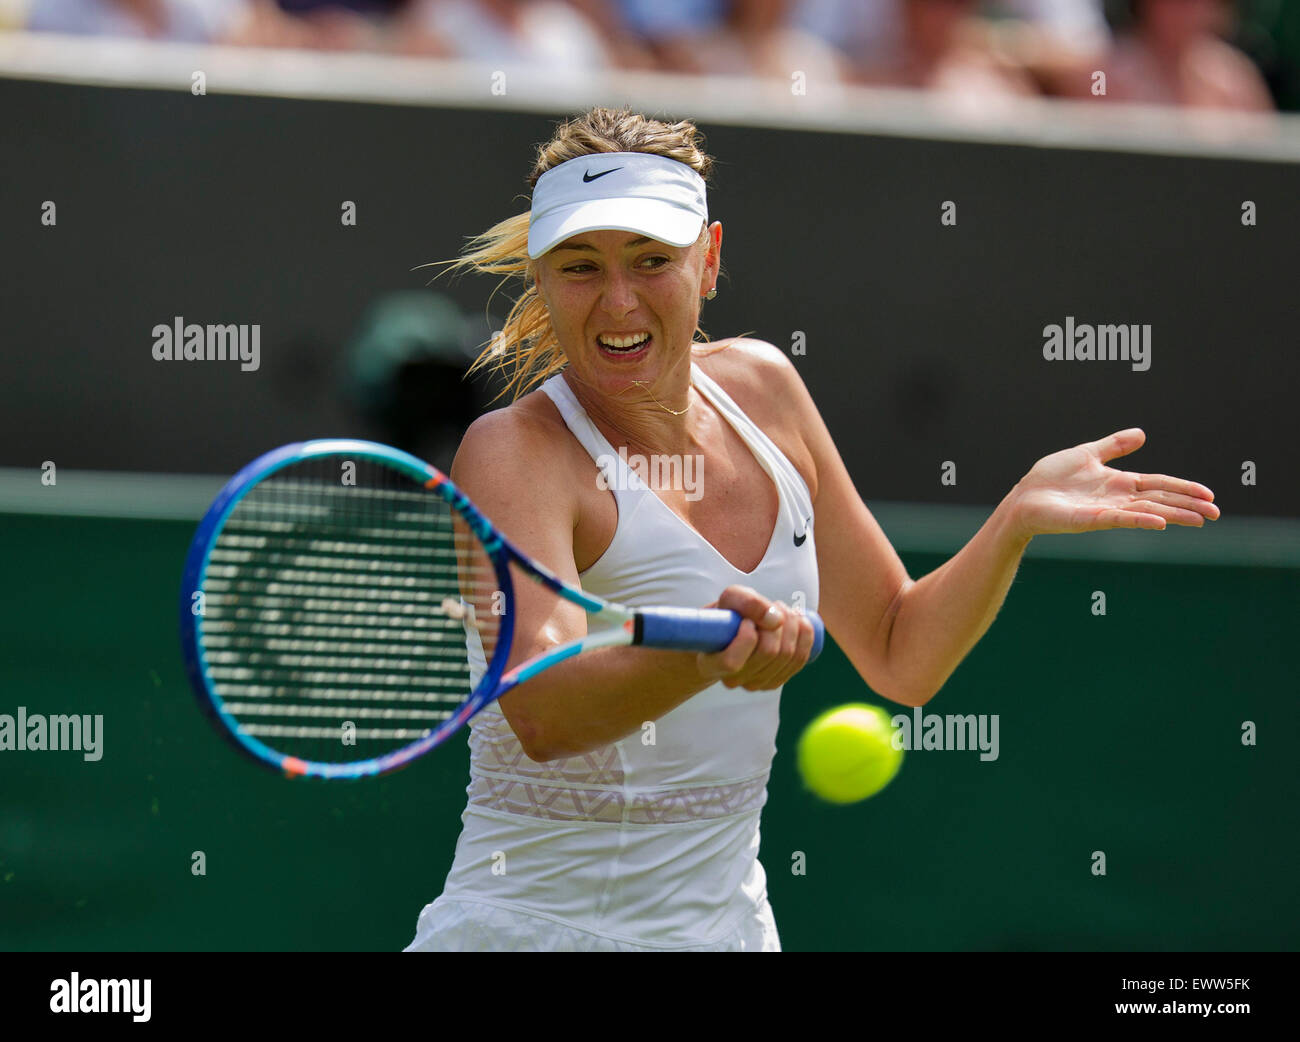 Wimbledon, London, UK. 1st July, 2015. Tennis, Wimbledon, Maria ...